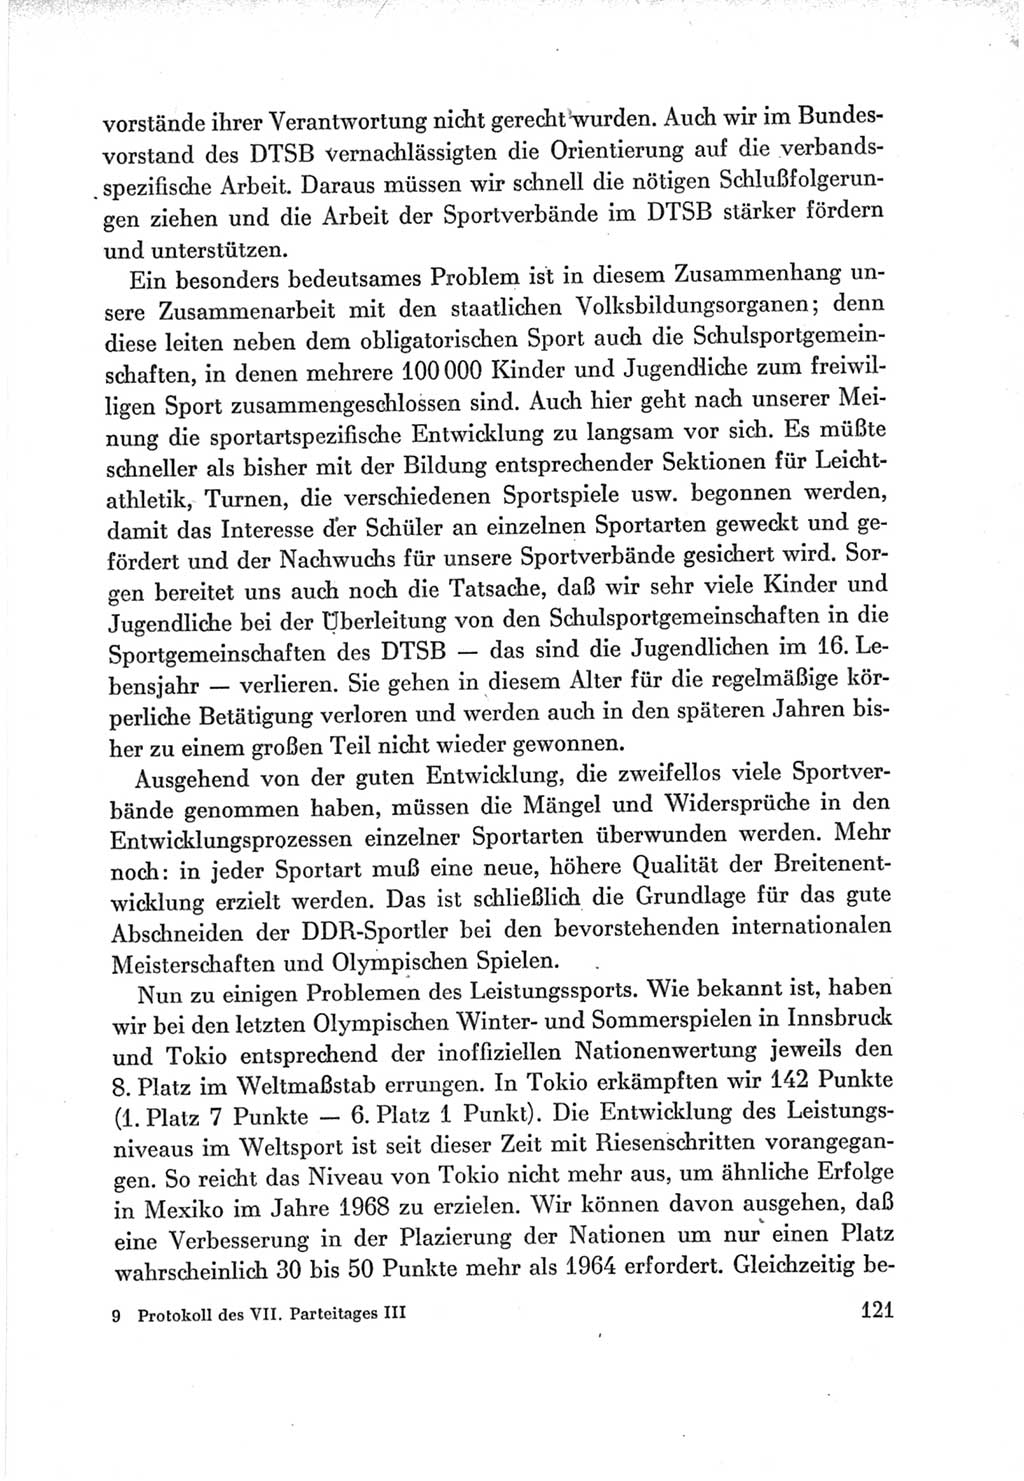 Protokoll der Verhandlungen des Ⅶ. Parteitages der Sozialistischen Einheitspartei Deutschlands (SED) [Deutsche Demokratische Republik (DDR)] 1967, Band Ⅲ, Seite 121 (Prot. Verh. Ⅶ. PT SED DDR 1967, Bd. Ⅲ, S. 121)